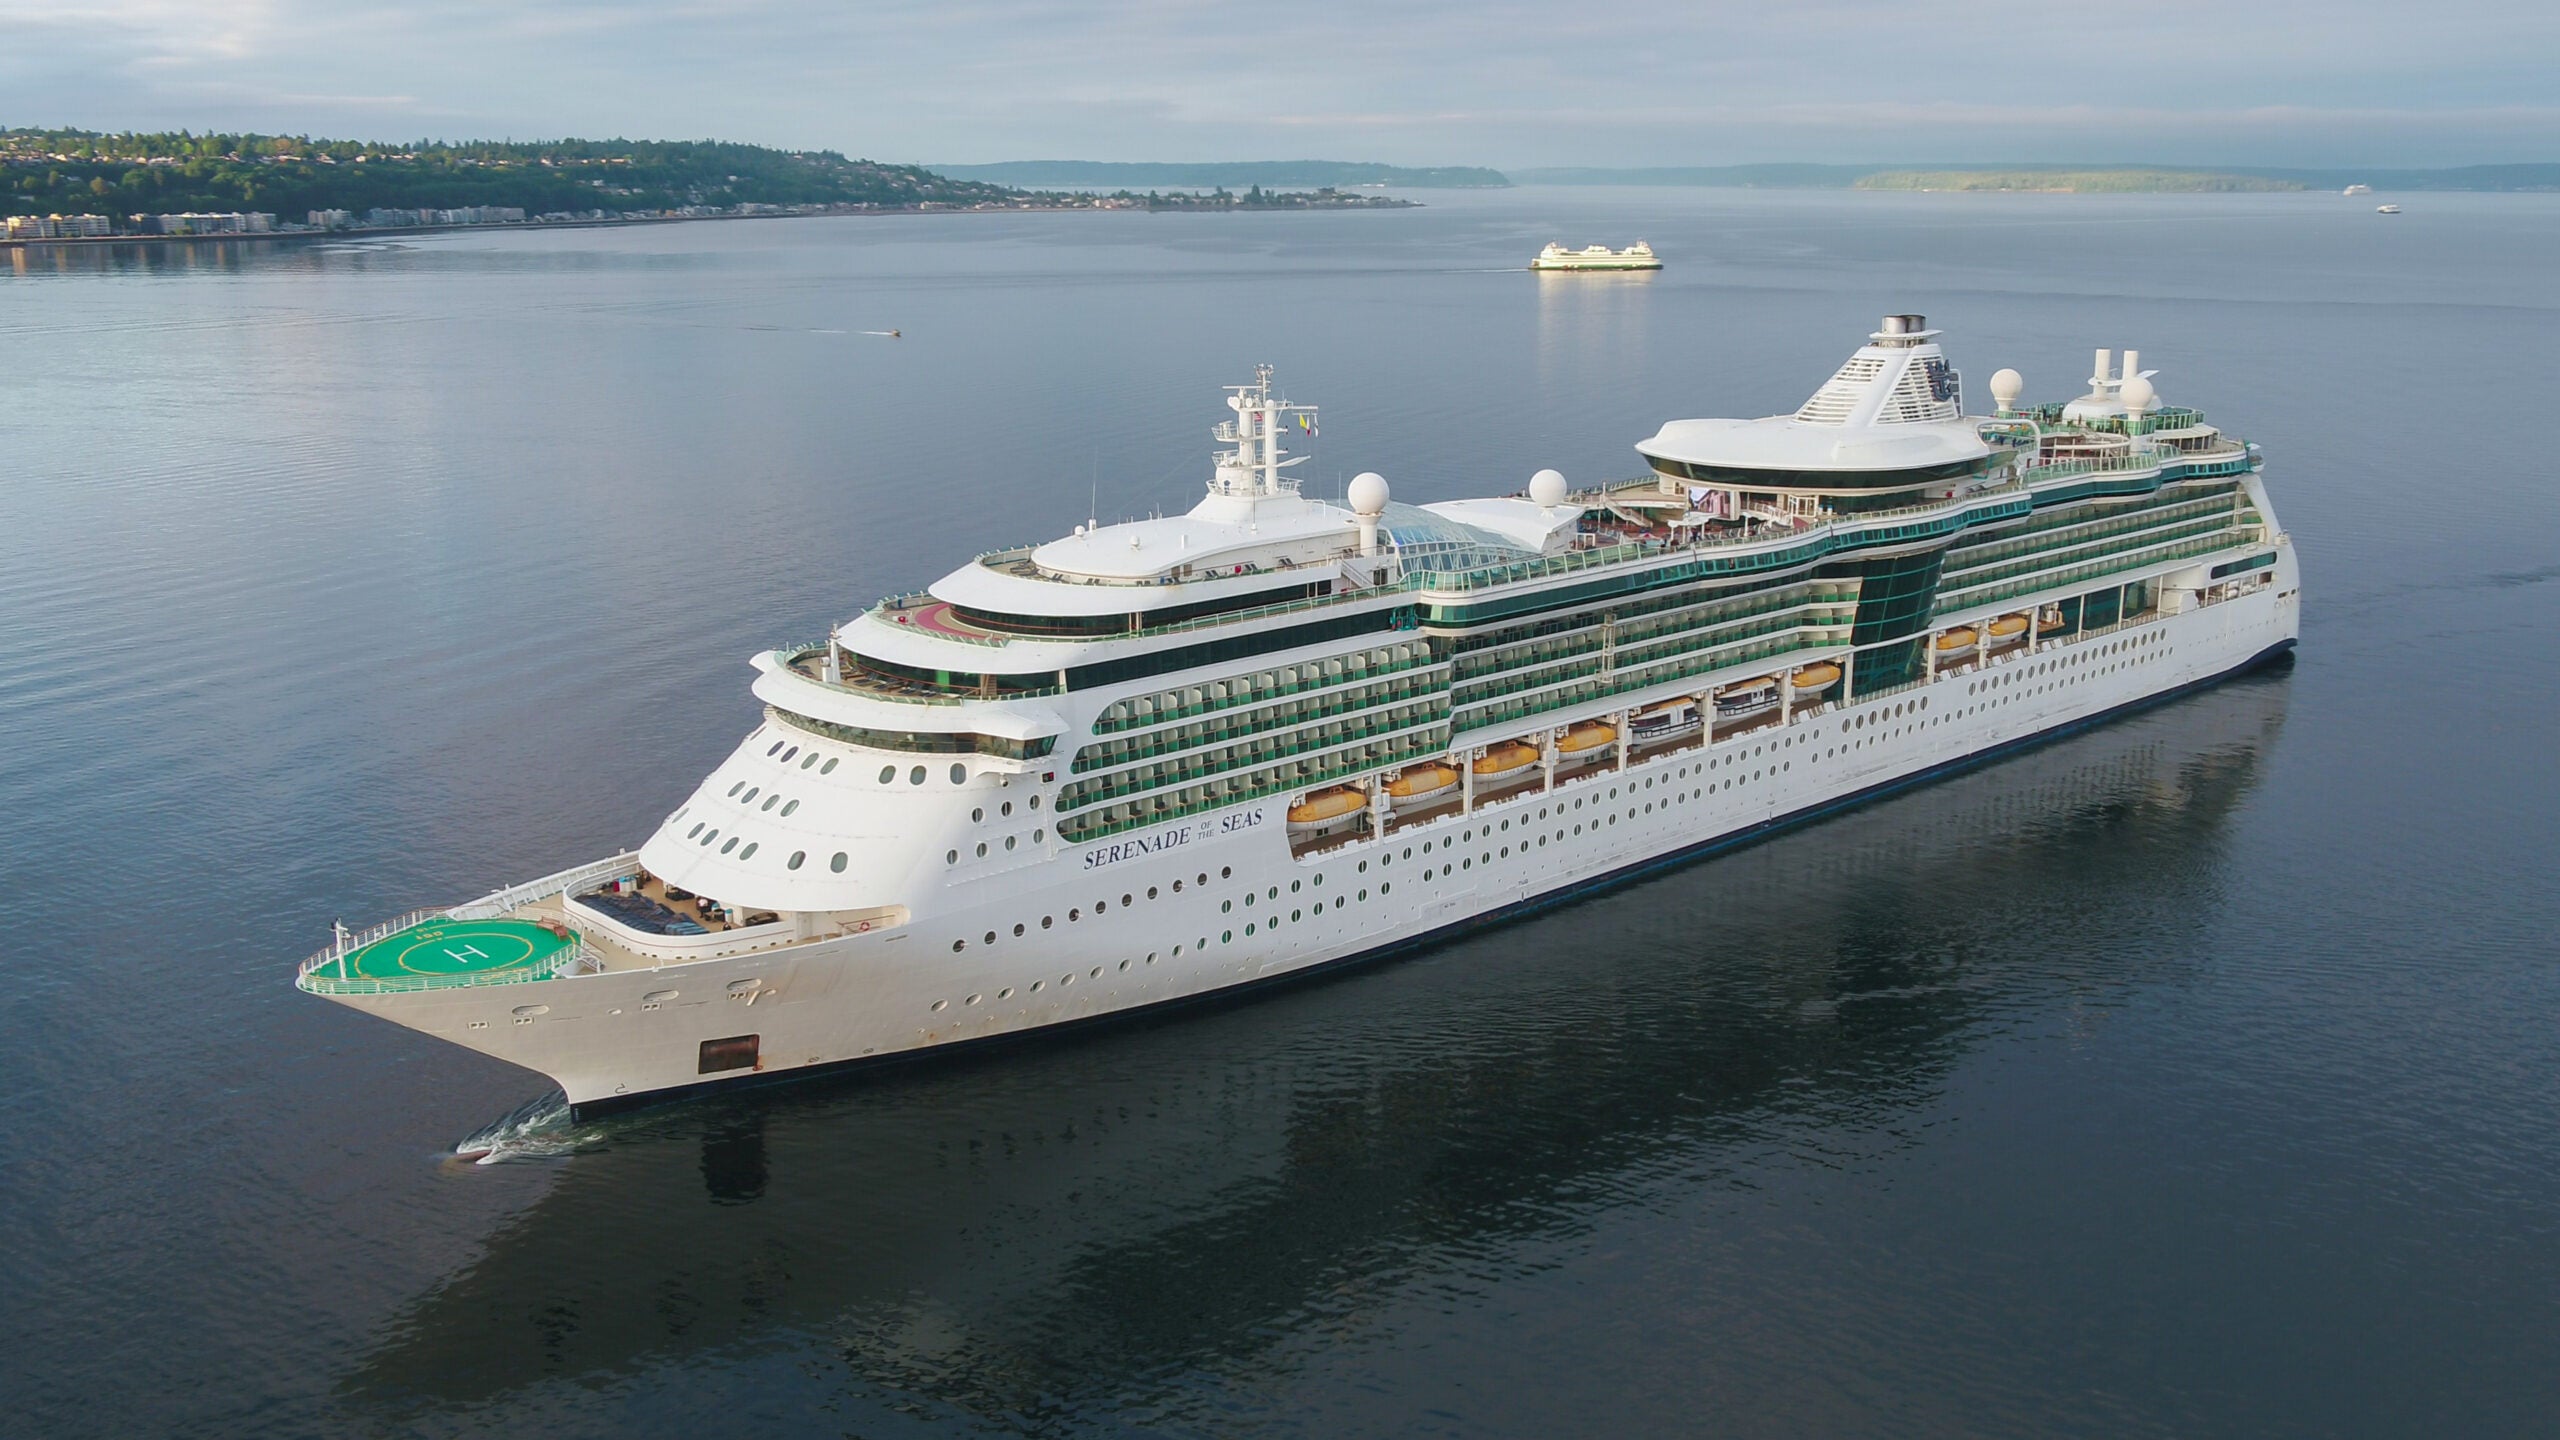 Royal Caribbean’s world cruise: 8 myths busted